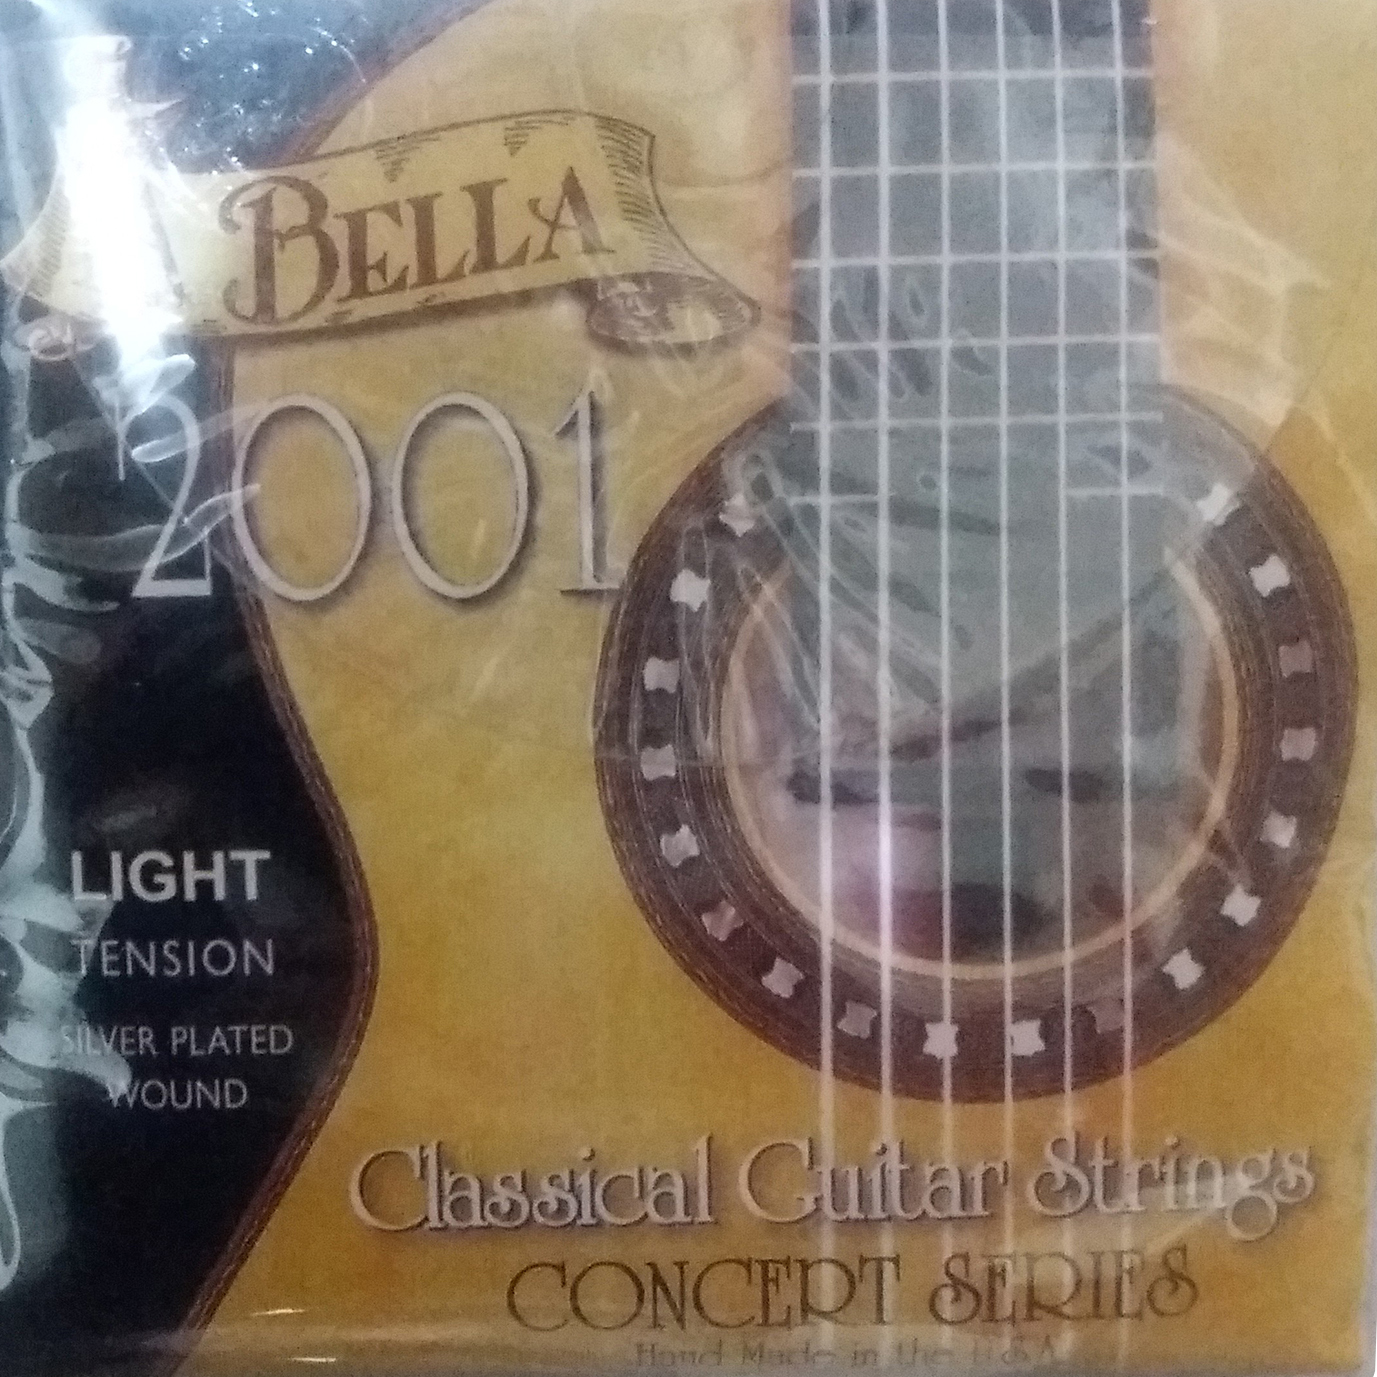 سیم گیتار کلاسیک لا بلا کد 2001